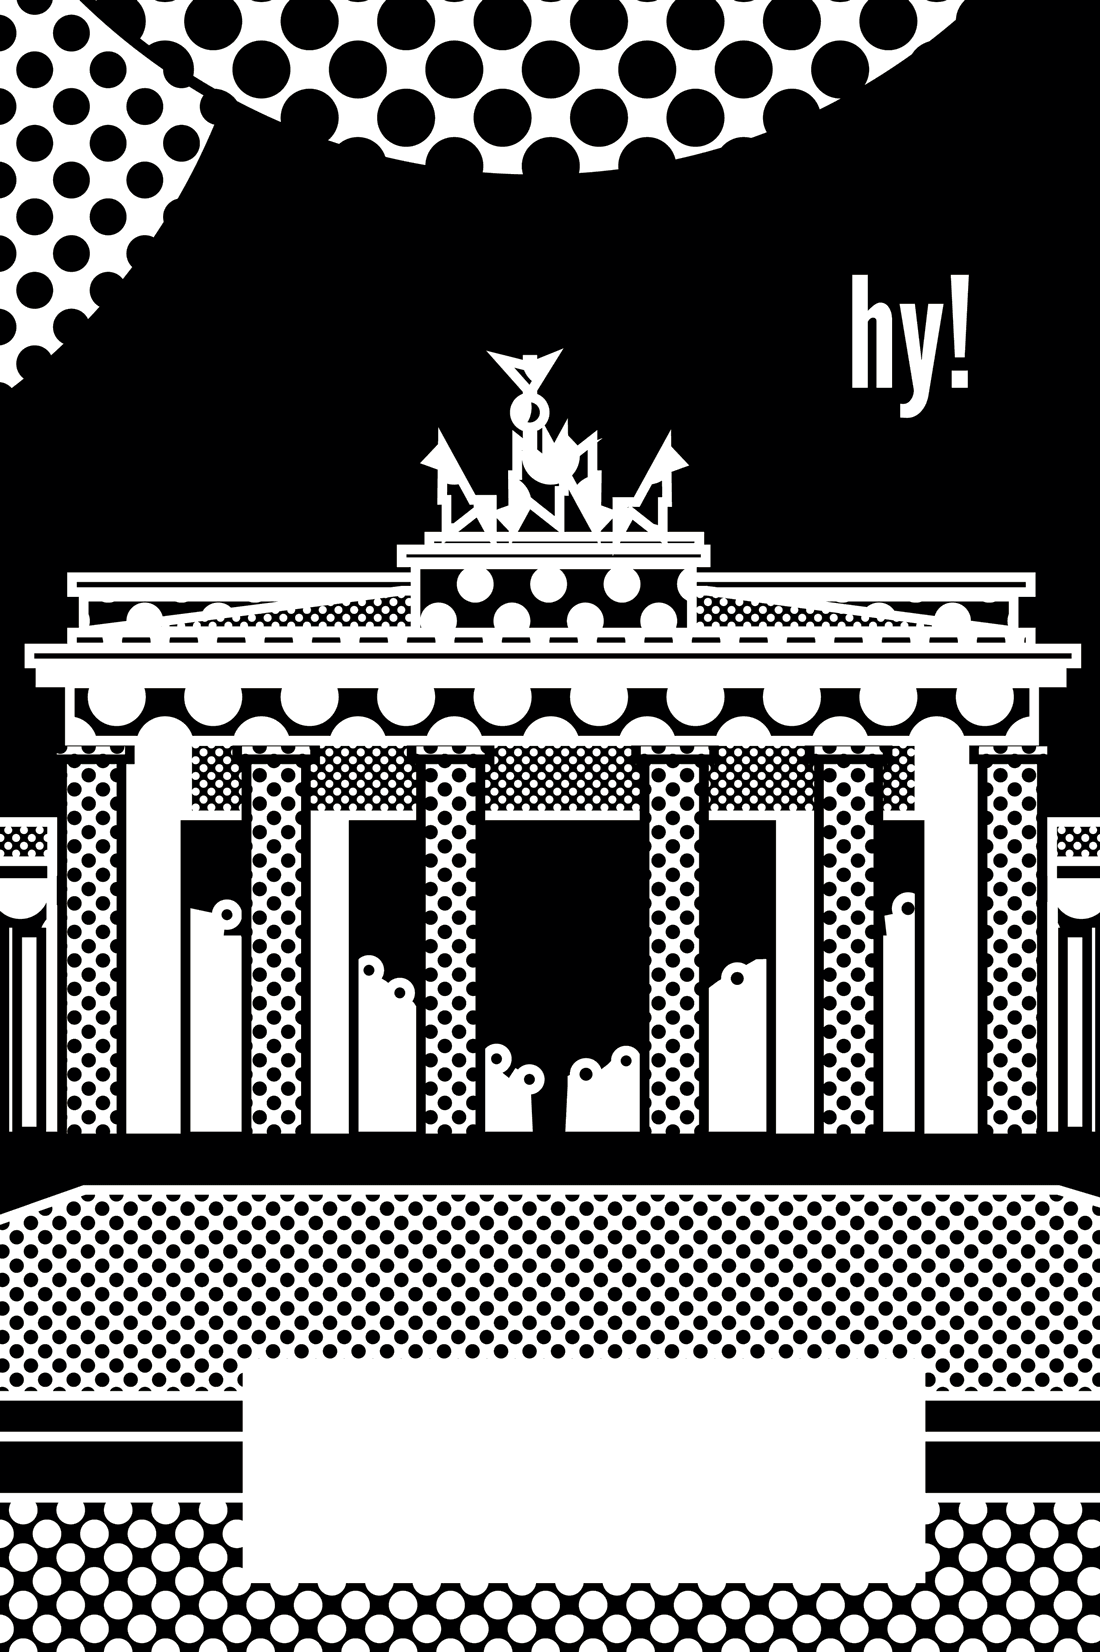 hy! Berlin